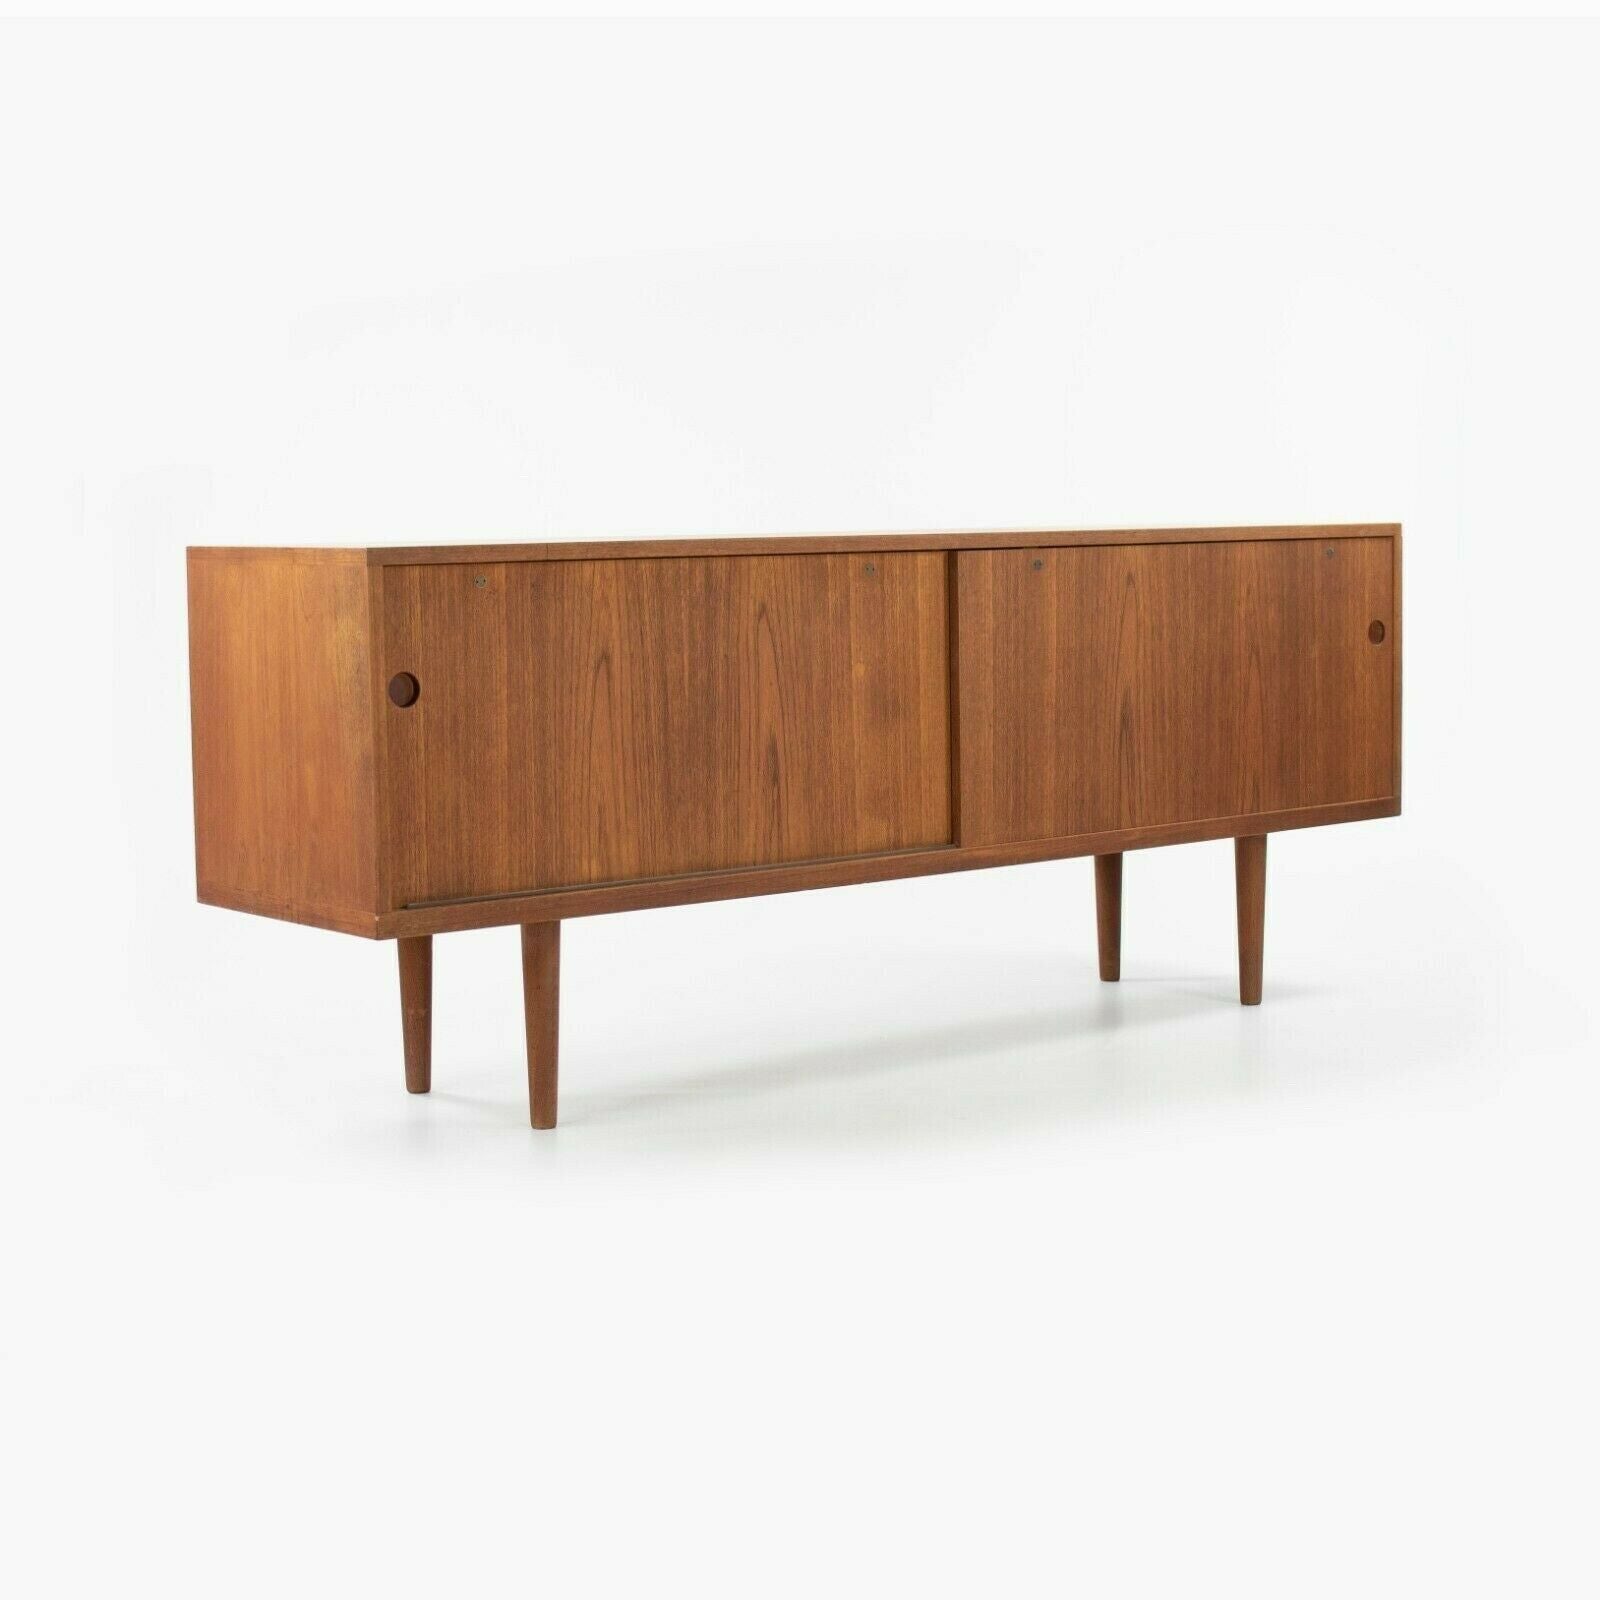 SOLD 1965 Hans J. Wegner Teak Credenza / Sideboard Cabinet by RY Mobler of Denmark